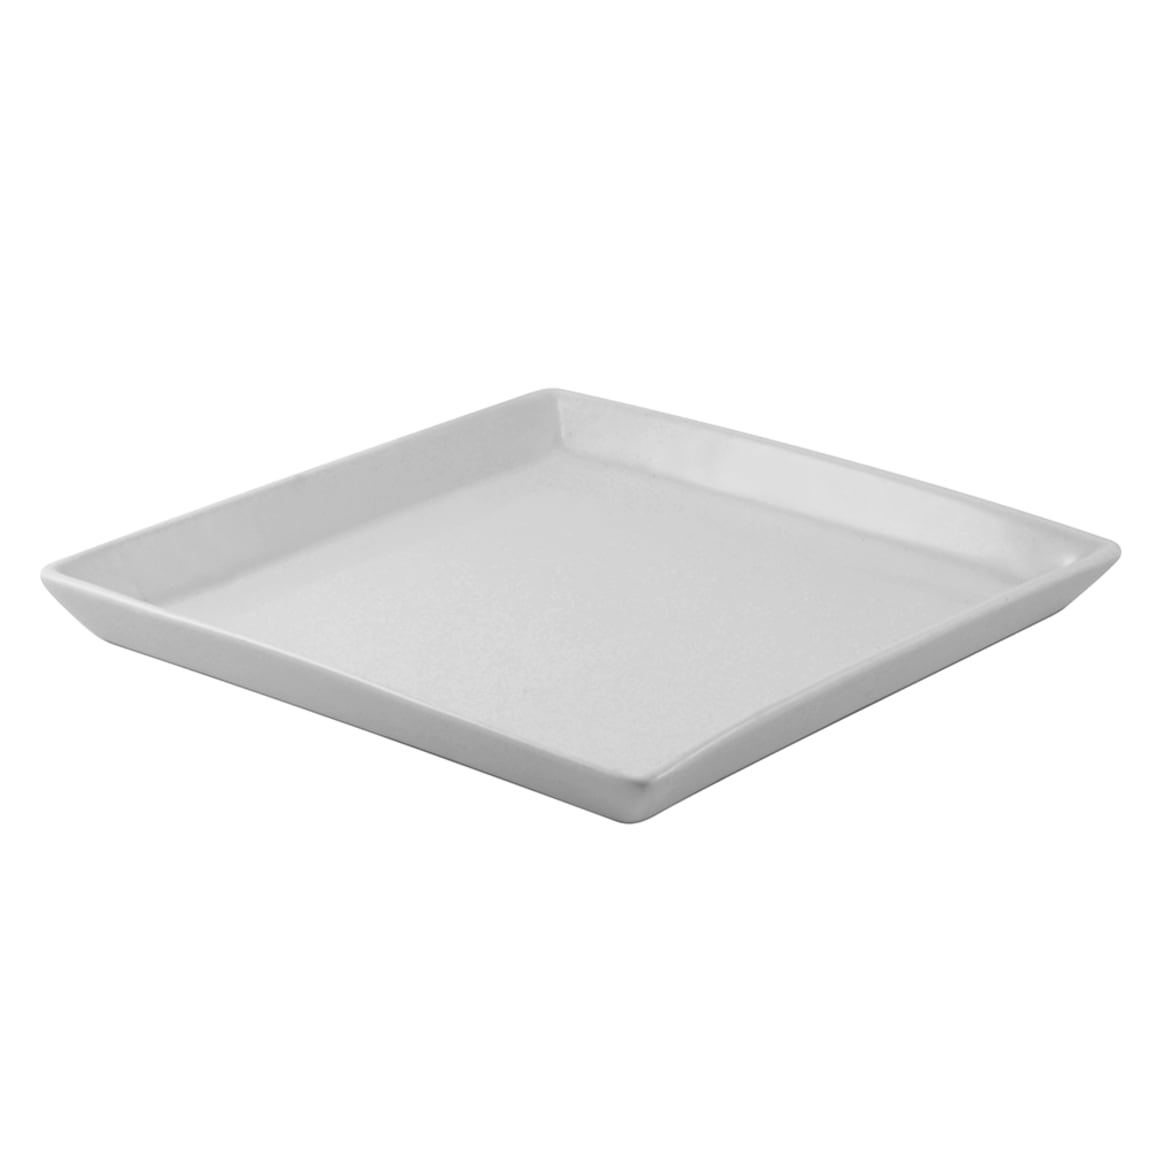 10 Strawberry Street WTR-6SQDSH 6.38" Square Plate - Porcelain, White